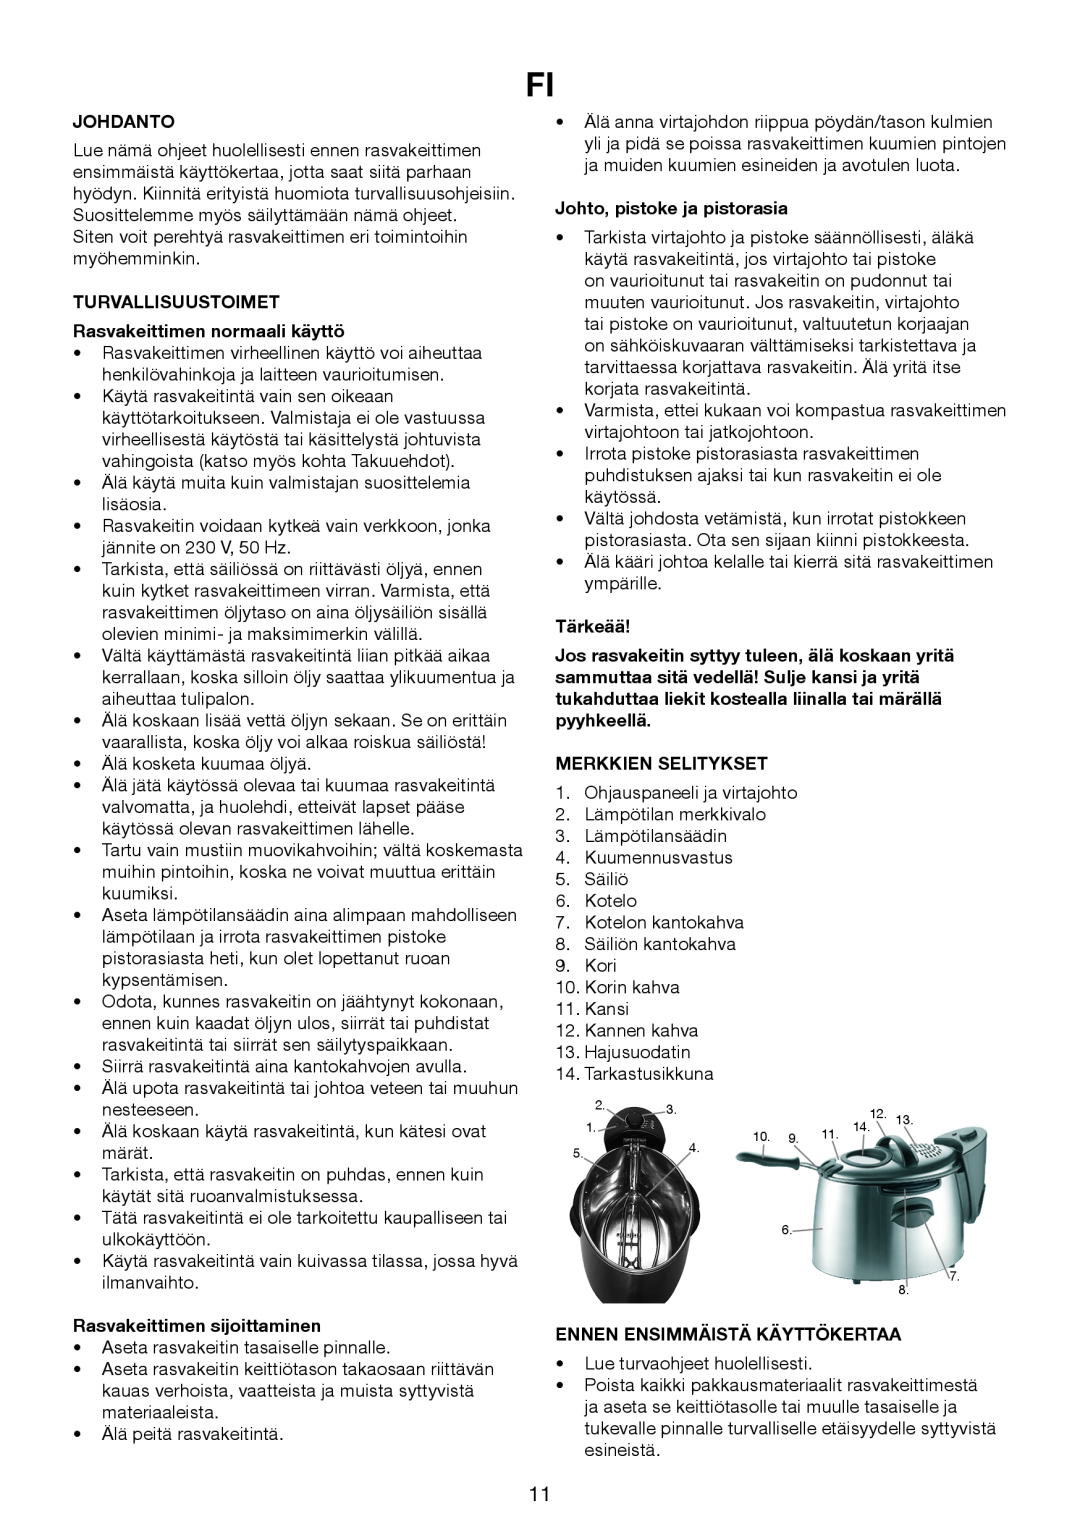 Melissa 643-198 manual Johdanto, TURVALLISUUSTOIMET Rasvakeittimen normaali käyttö, Rasvakeittimen sijoittaminen, Tärkeää 